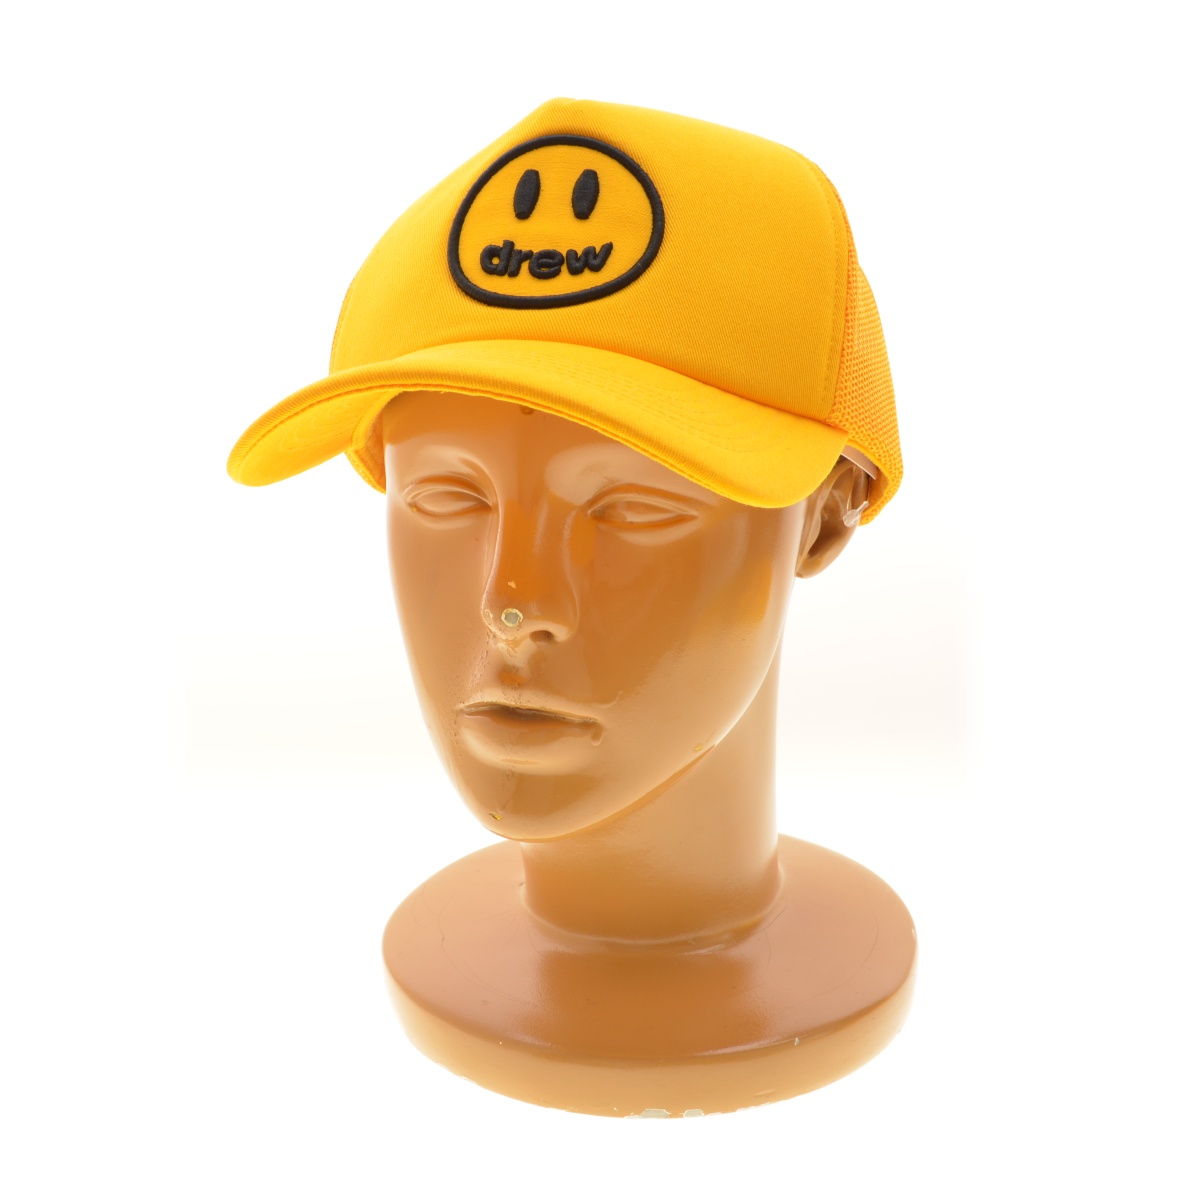 drew house / ドリューハウス mascot trucker hat キャップ -ブランド古着の買取販売カンフル